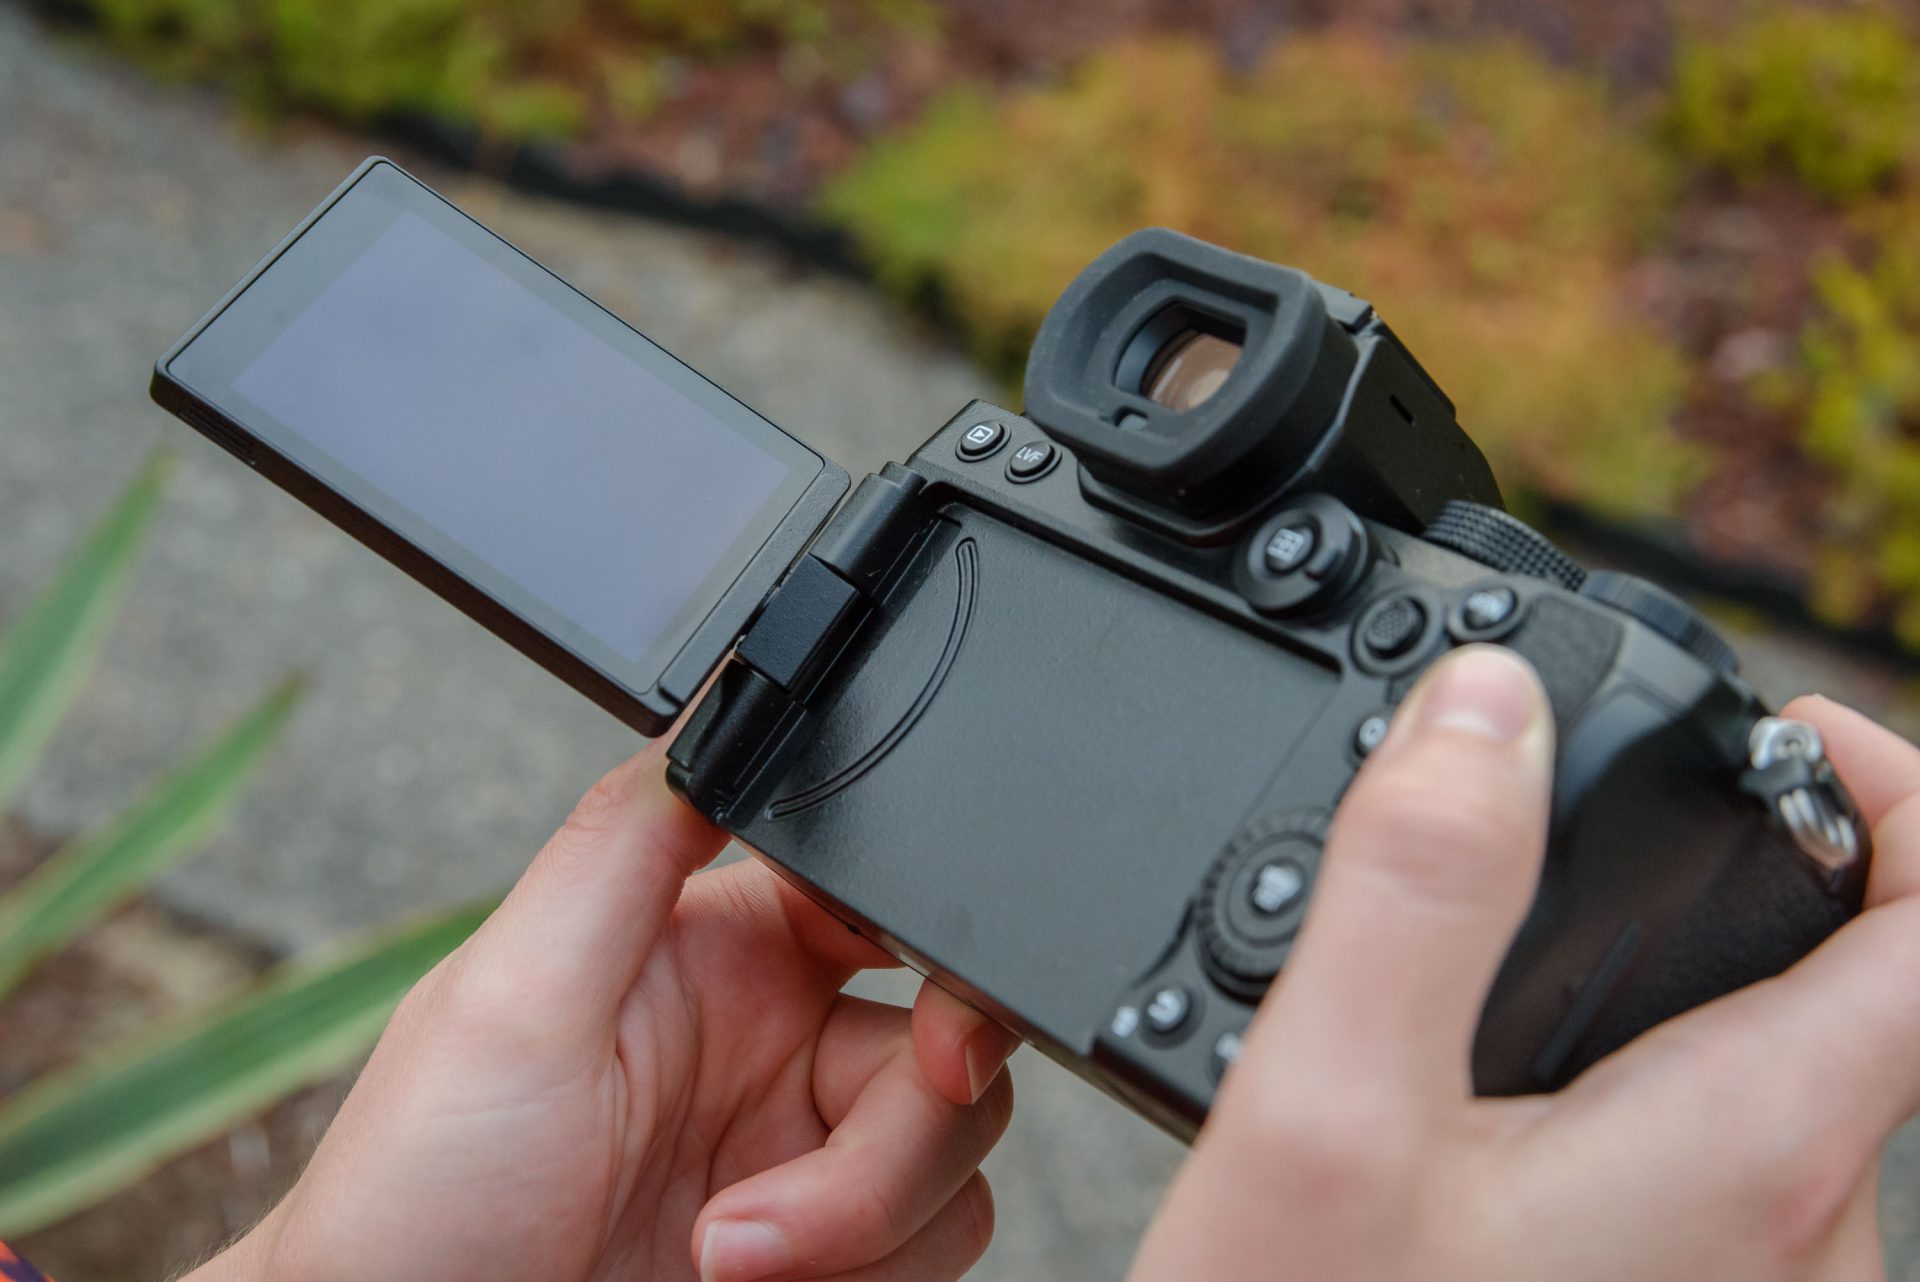 Máy ảnh Panasonic Lumix S5 ra mắt, cảm biến full frame 24MP, chống rung 5 trục, quay 4K60p, giá 2000 USD